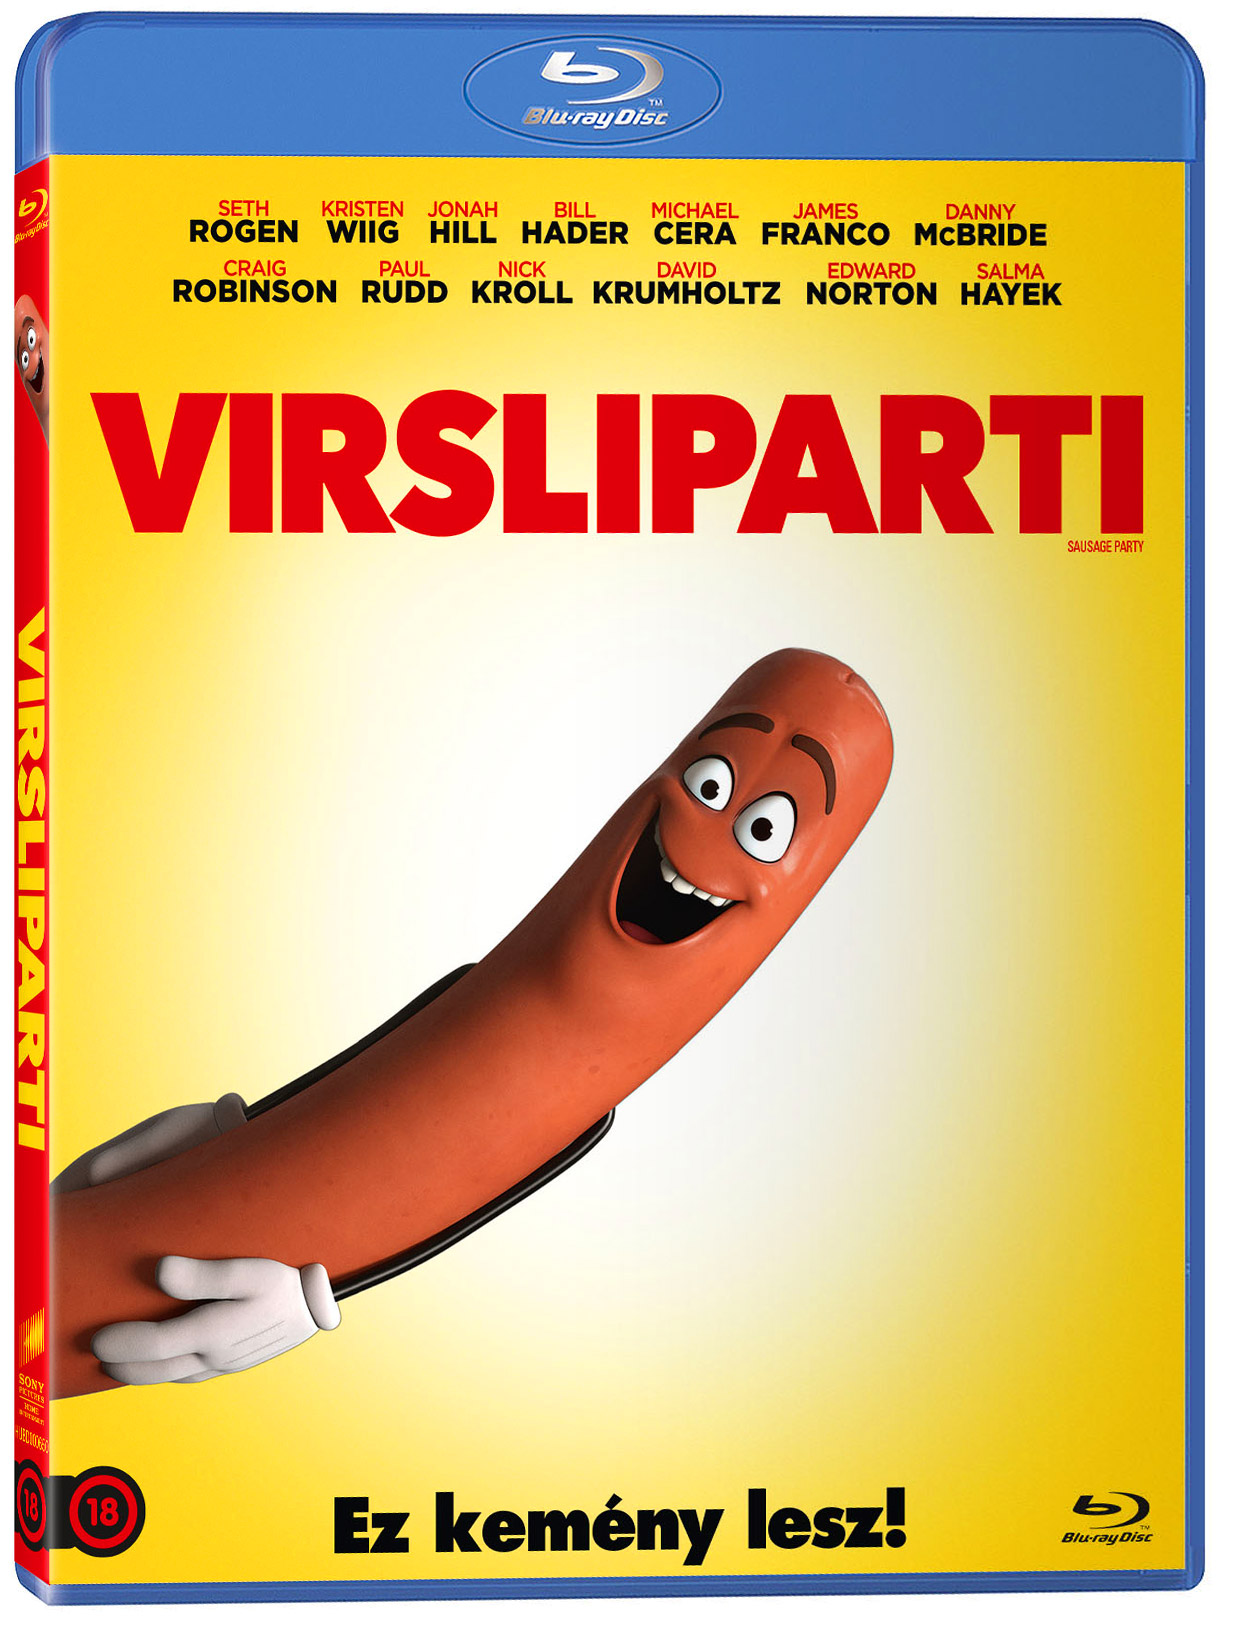 Virsliparti Blu-ray